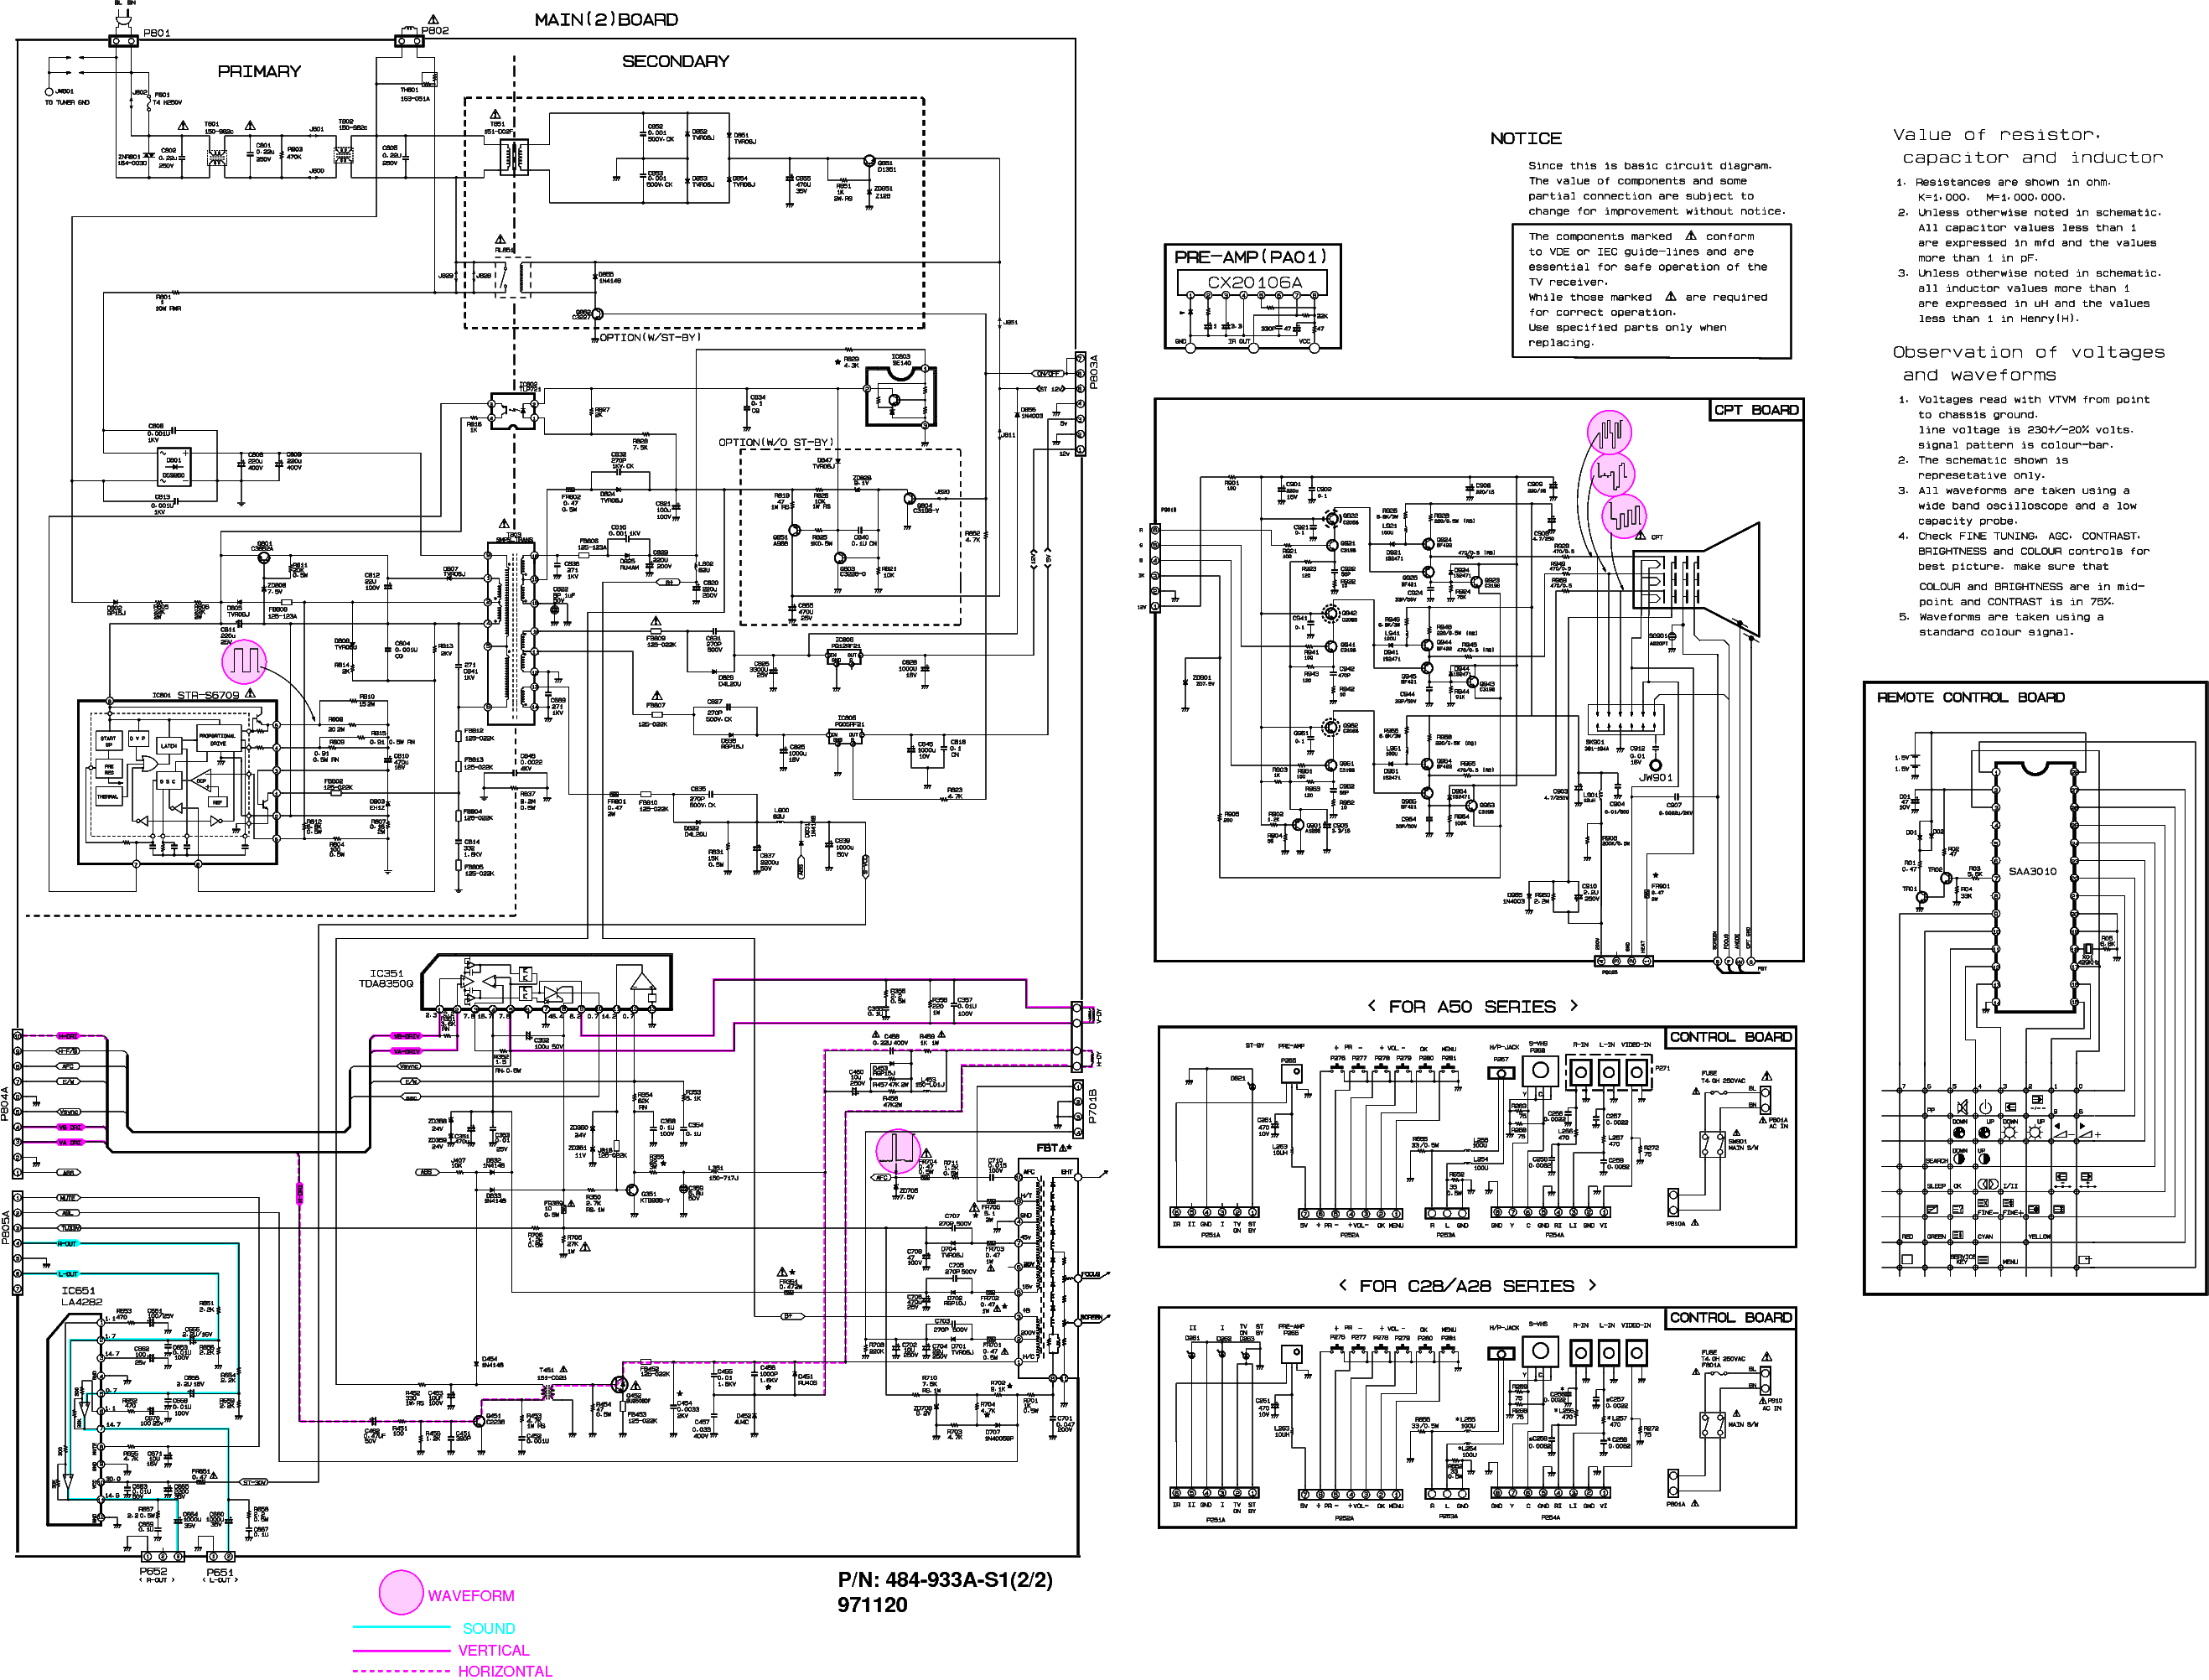 LG CF28A50F service manual (2nd page)